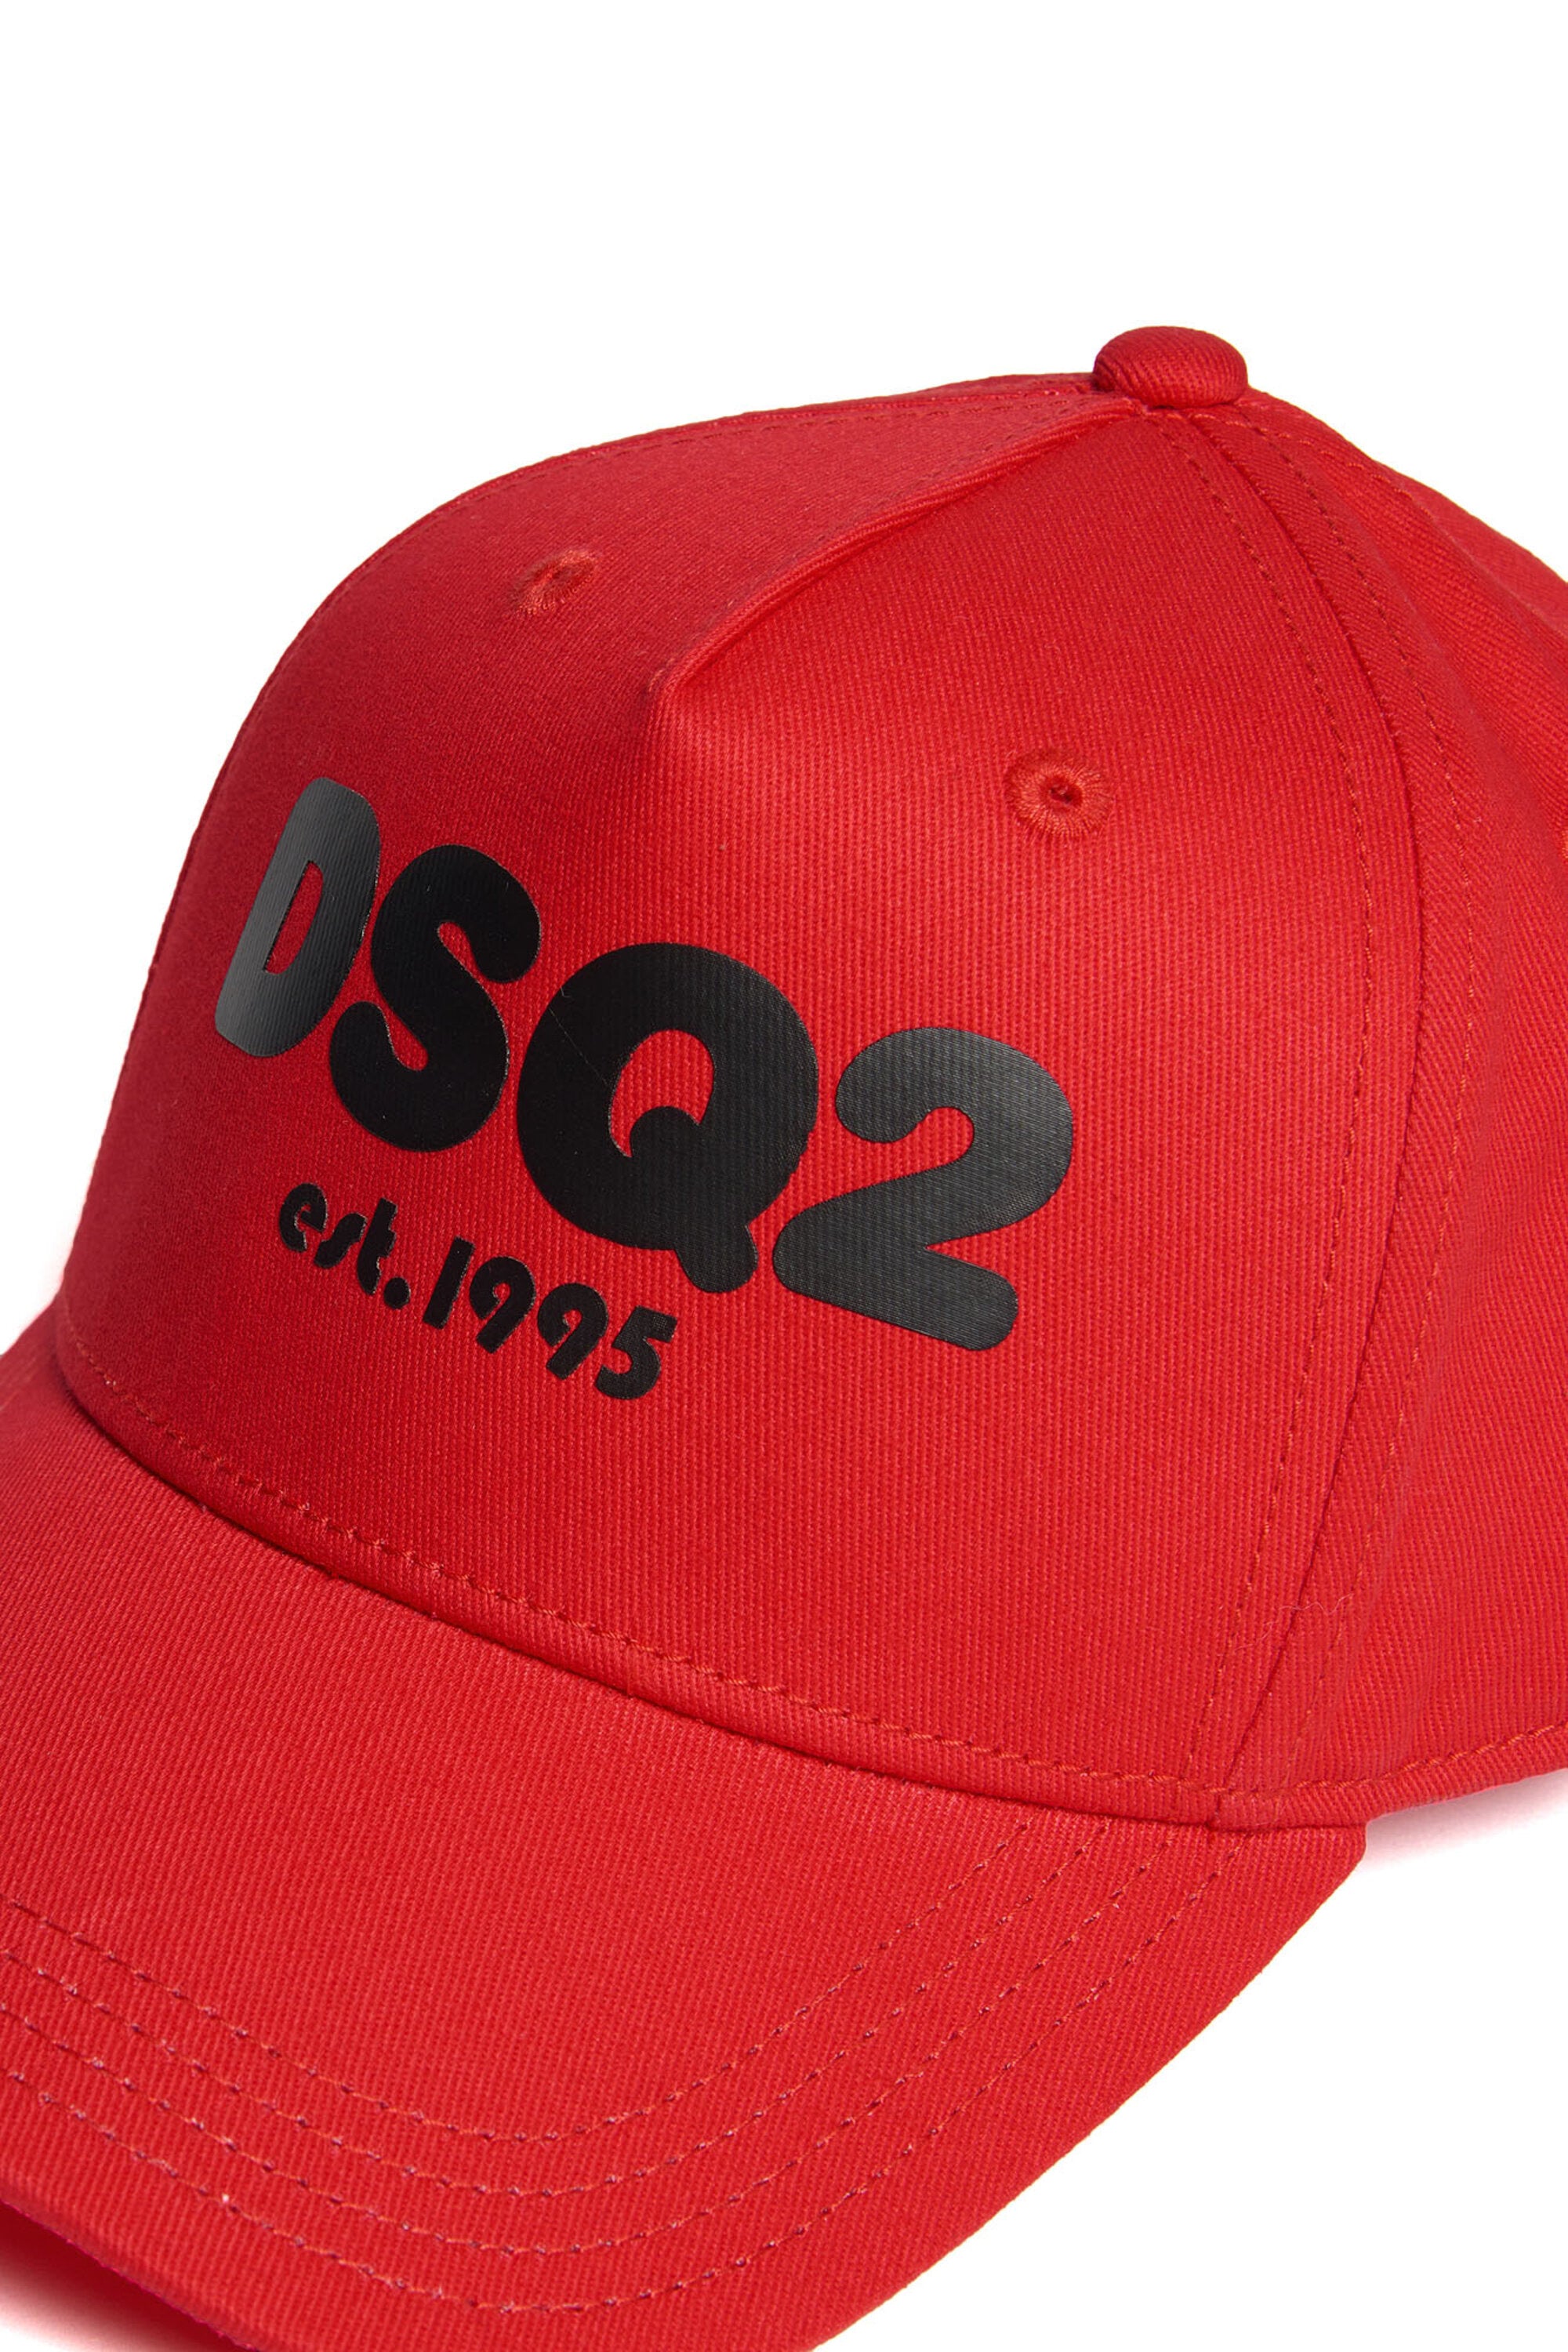 DSQ2 logo branded baseball cap est.1995